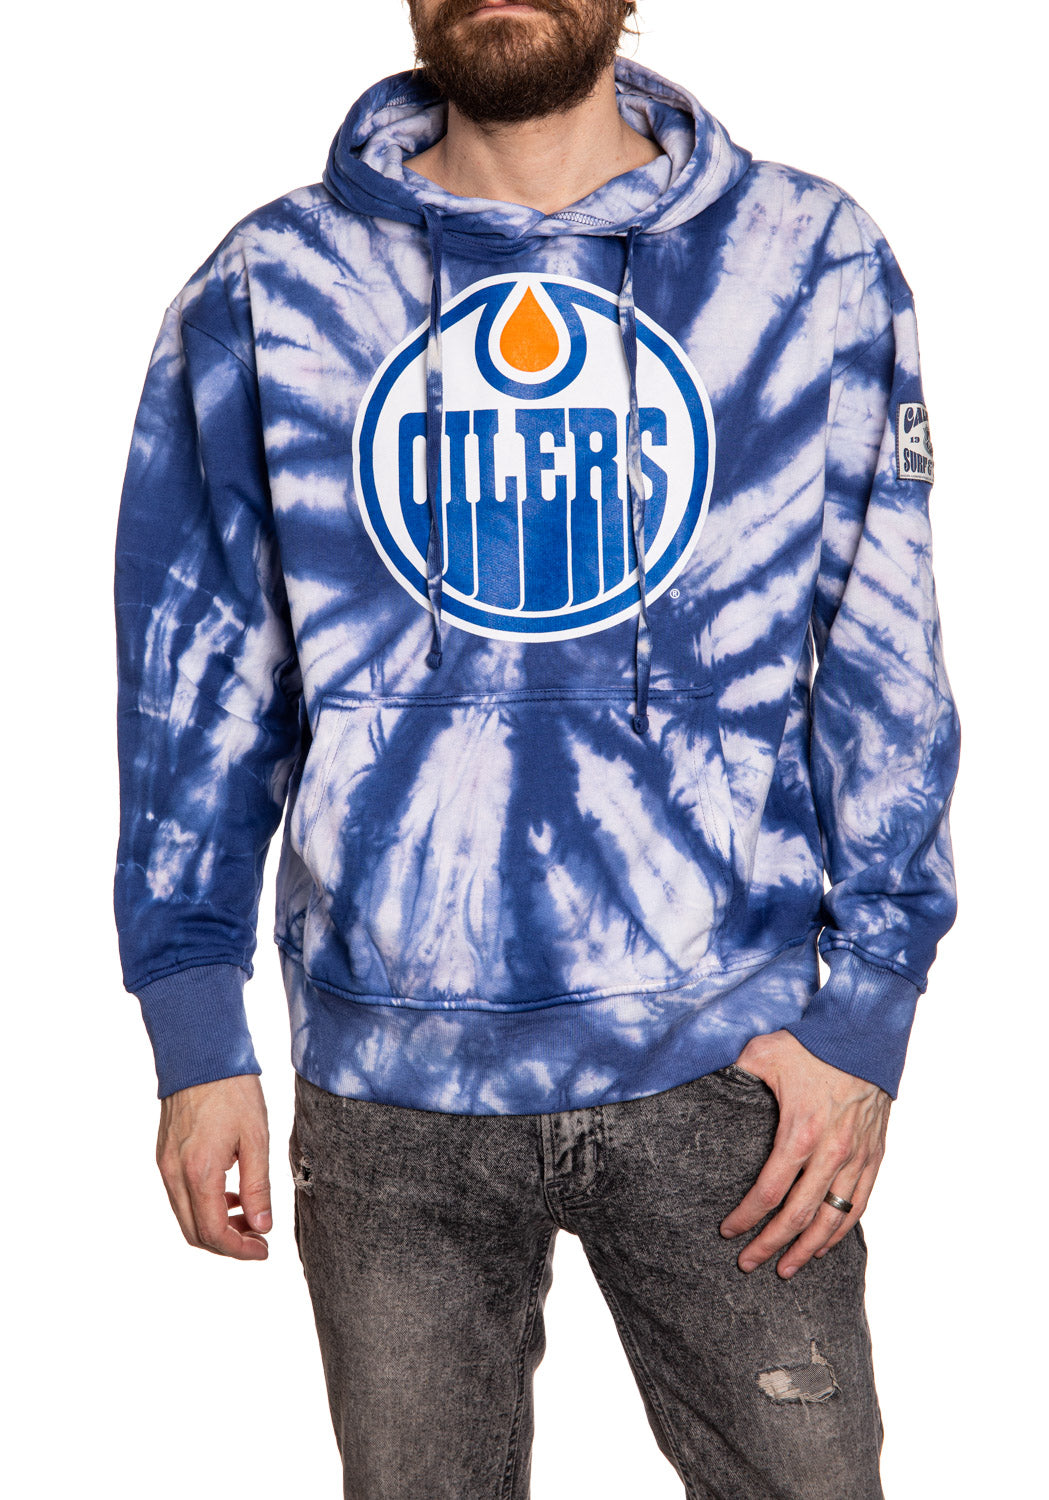 Official NHL licensed Edmonton Oilers Spiral Tie Dye hoodie